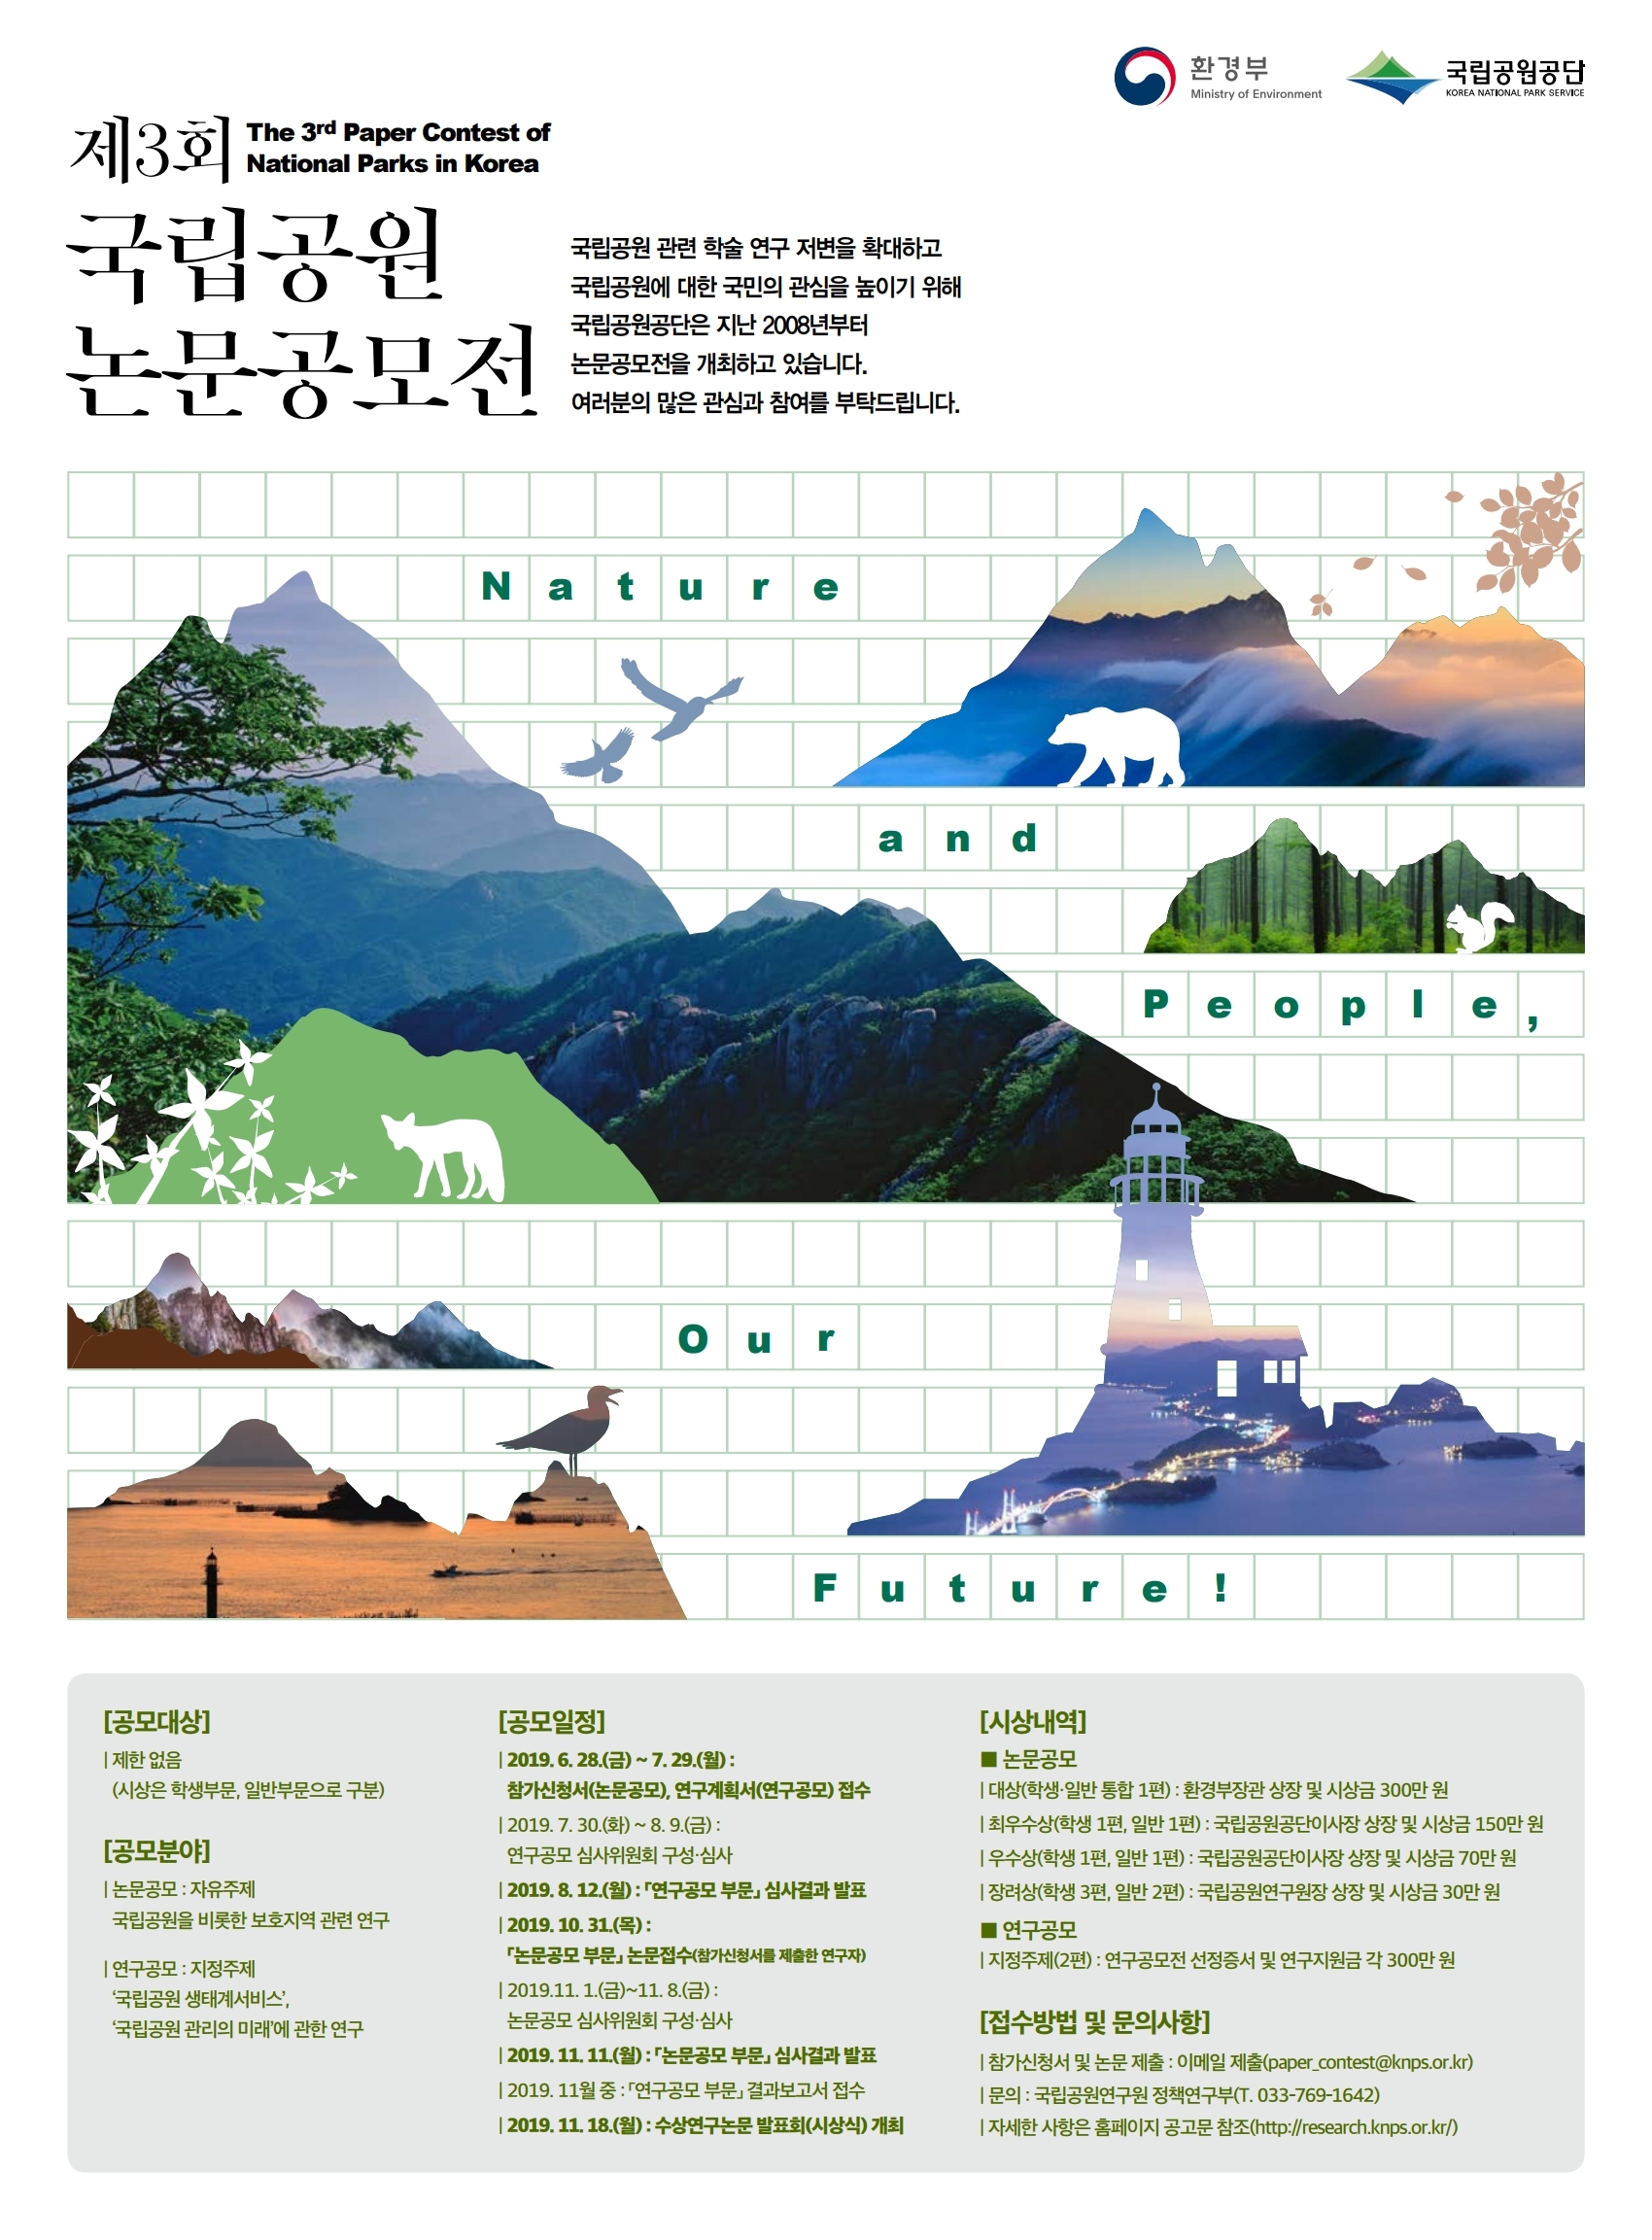 (로고) 환경부 Ministry of Environment/국립공원공단 KOREA NATIONAL PARK SERVICE/ 제3회 국립공원 논문공모전 The 3rd Paper Contest of National Parks in Korea/ 국립공원 관련 학술 연구 저변을 확대하고 국립공운에 대한 국민의 관심을 높이기 위해 국립공원공단은 지난 2008년부터 논문공모전을 개최하고 있습니다. 여러분의 많은 관심과 참여를 부탁드립니다. / Nature and People, Our Future!/ [공모대상] 제한없음(시상은 학생부문, 일반부문으로 구분)/ [공모분야]  논문공모: 자유주제 국립공원을 비롯한 보호지역 관련 연구/ 연구공모:지정주제 국립공원 생태계서비스, 국립공원 관리의 미래에 관한 연구/ [공모일정] 2019.6.28.(금) ~ 7.29.(월) : 참가신청서(논문공모), 연구계획서(연구공모)접수/ 2019.7.30.(화)~8.9.(금):연구공모 심사위원회 구성·심사/2019.8.12.(월):「연구공모 부문」심사결과 발표/ 2019.10.31.(목):「논문공모 부문」논문접수(참가신청서를 제출한 연구자)/ 2019.11.1.(금)~11.8.(금):논문공모 심사위원회 구성·심사/  2019.11.11.(월):「논문공모 부문」심사결과 발표/ 2019.11월 중 : 「연구공모 부문」결과보고서 접수/ 2019.11.18.(월): 수상연구논문발표회(시상식) 개최/ [시상내역] ■논문공모 대상(학생·일반 통합 1편): 환경부장관 상장 및 시상금 300만 원, 최우수상(학생 1편, 일반 1편) : 국립공원공단이사장 상장 및 시상금 150만 원, 우수상(학생 1편, 일반 1편) : 국립공원공단이사장 상장 및 시상금 70만 원, 장려상(학생 3편, 일반 2편) : 국립공원연구원장 상장 및 시상금 30만원/ ■연구공모 지정주제(2편) : 연구공모전 선정증서 및 연구지원금 각300만 원/ [접수방법 및 문의사항] 참가신청서 및 논문 제출 : 이메일 제출(paper_contest@knps.or.kr), 문의 : 국립공원연구원 정책연구부(T. 033-769-1642) 자세한 사항은 홈페이지 공고문 참조(http://research.knps.or.kr/)